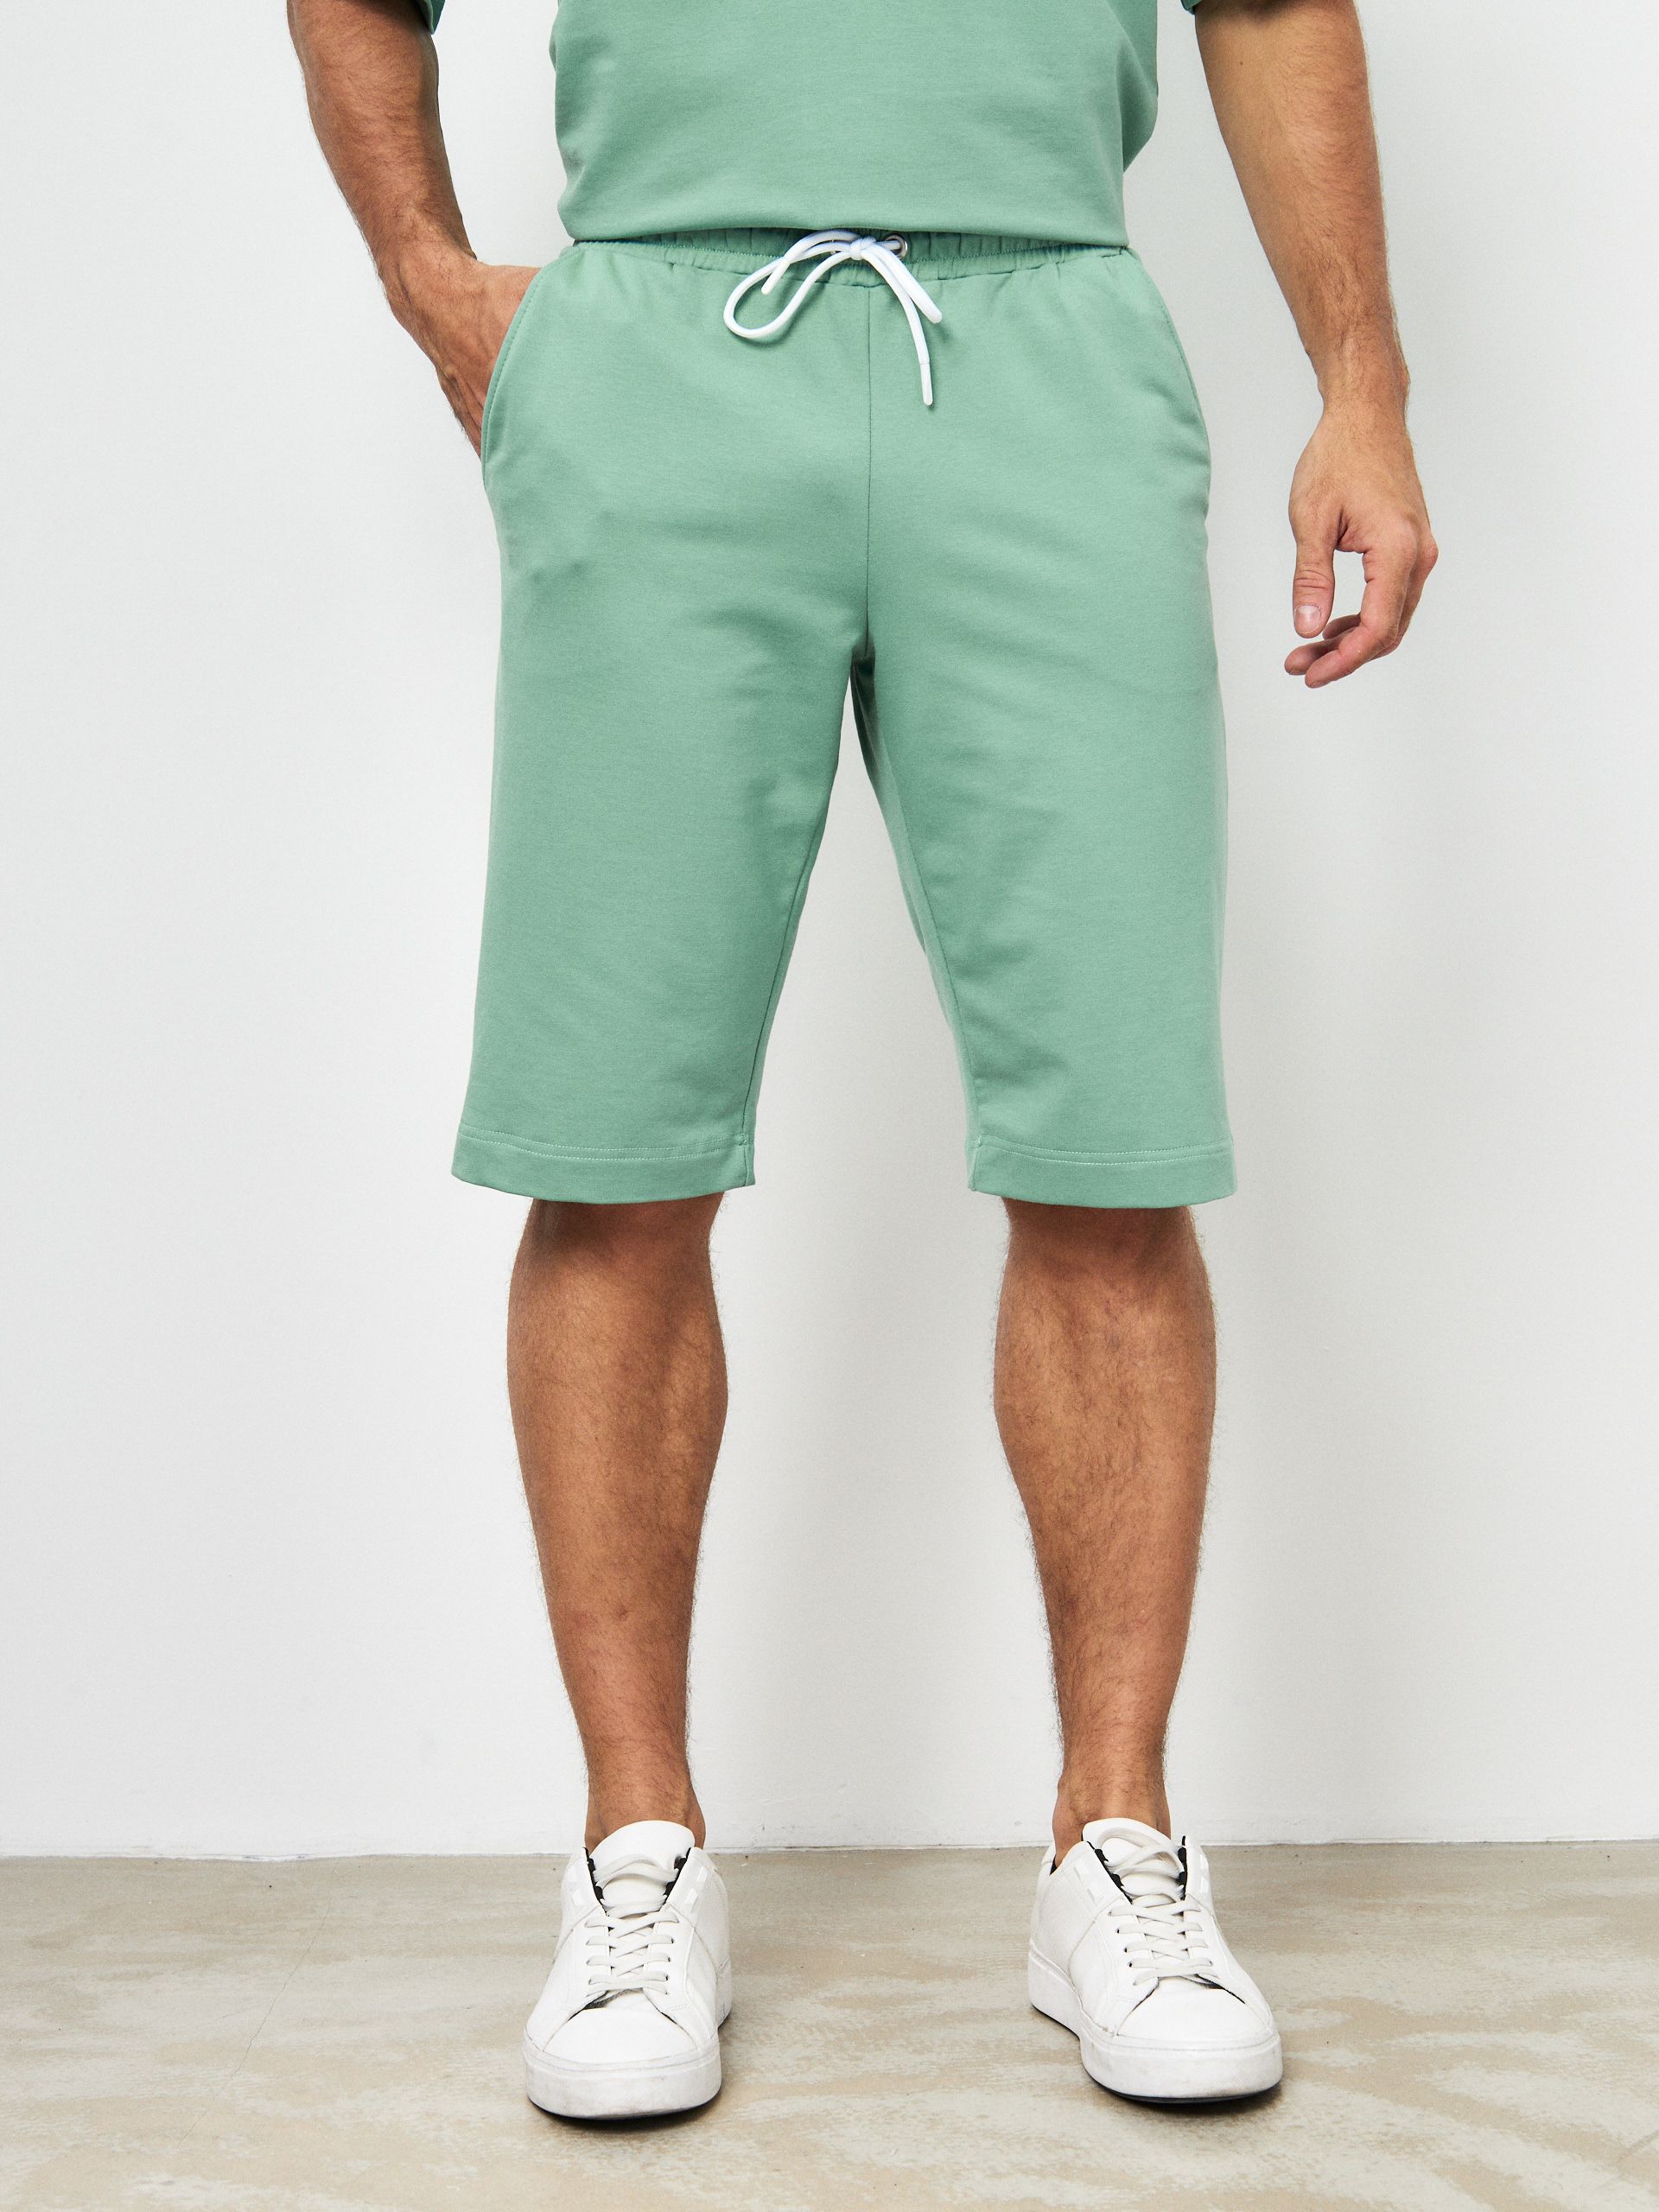 Повседневные шорты мужские MOM №1 MOM-88-3180 зеленые XL